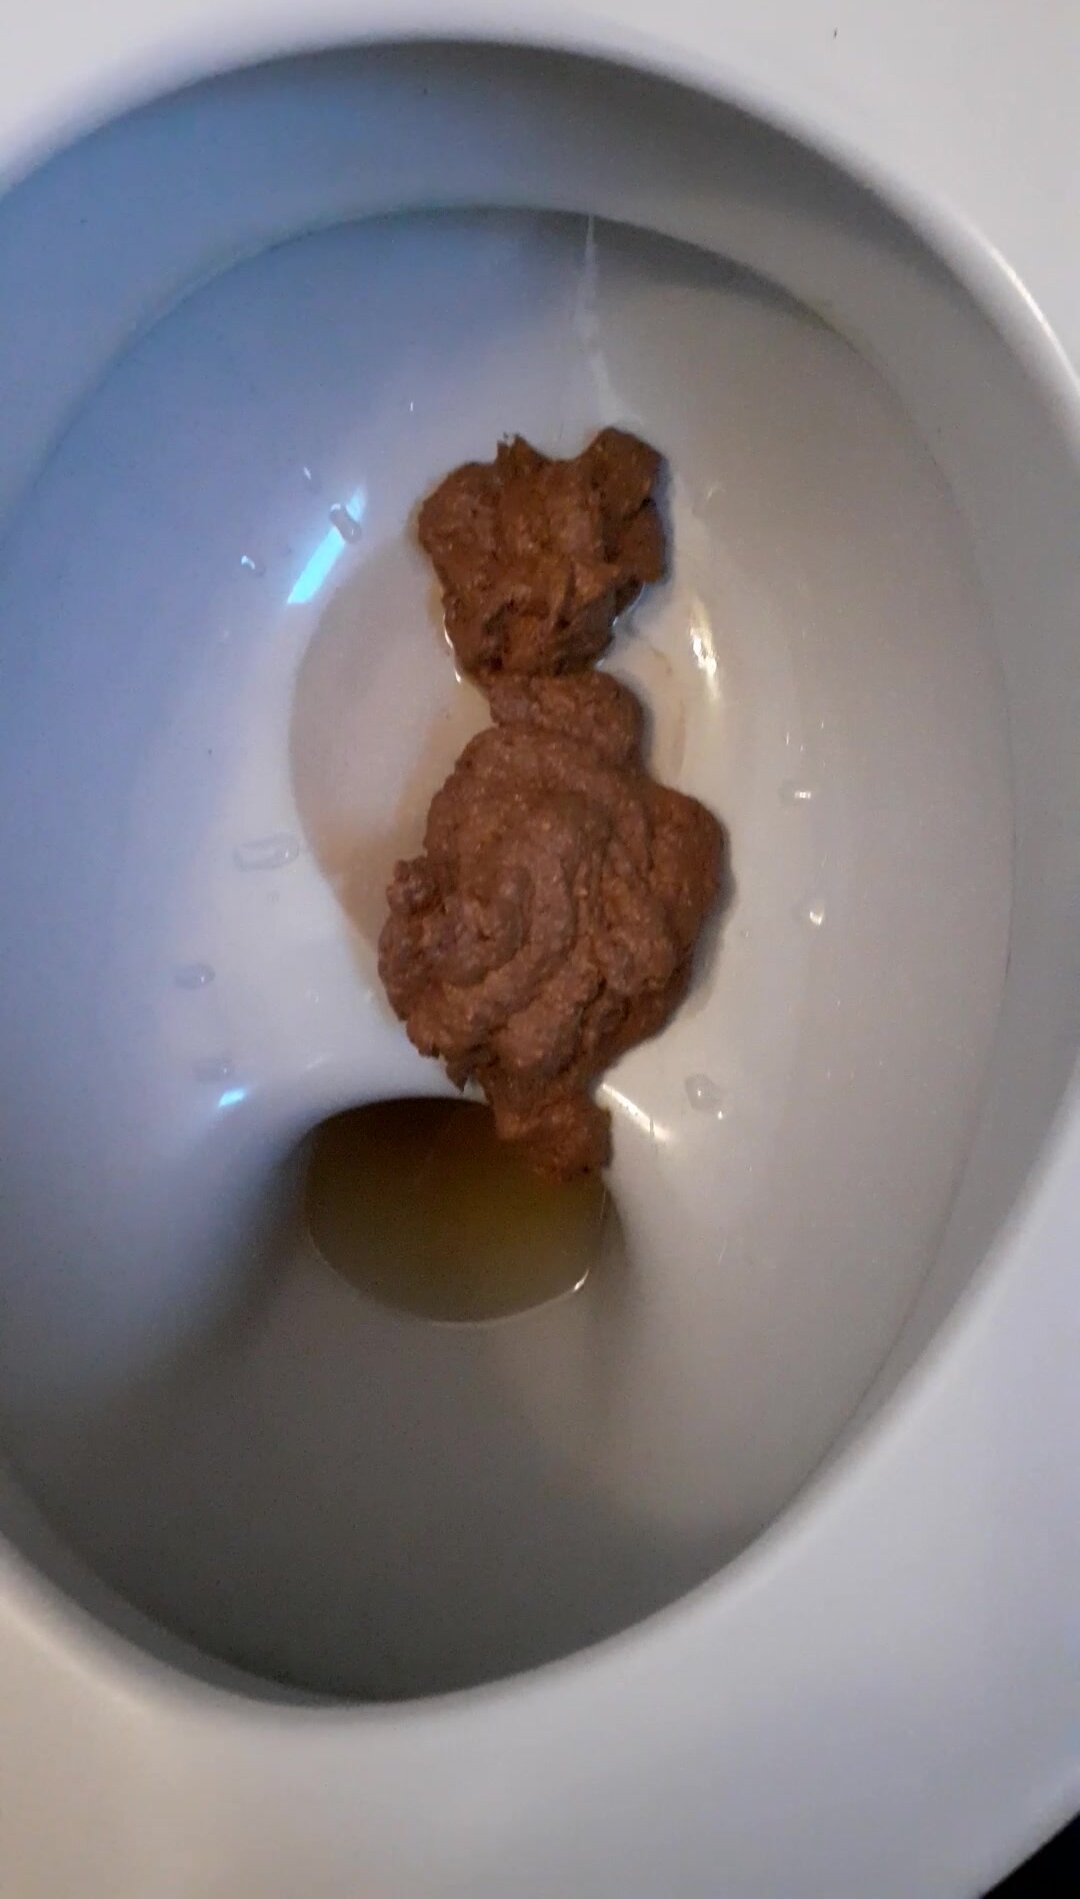 My massiver poop. Mery Christmas.